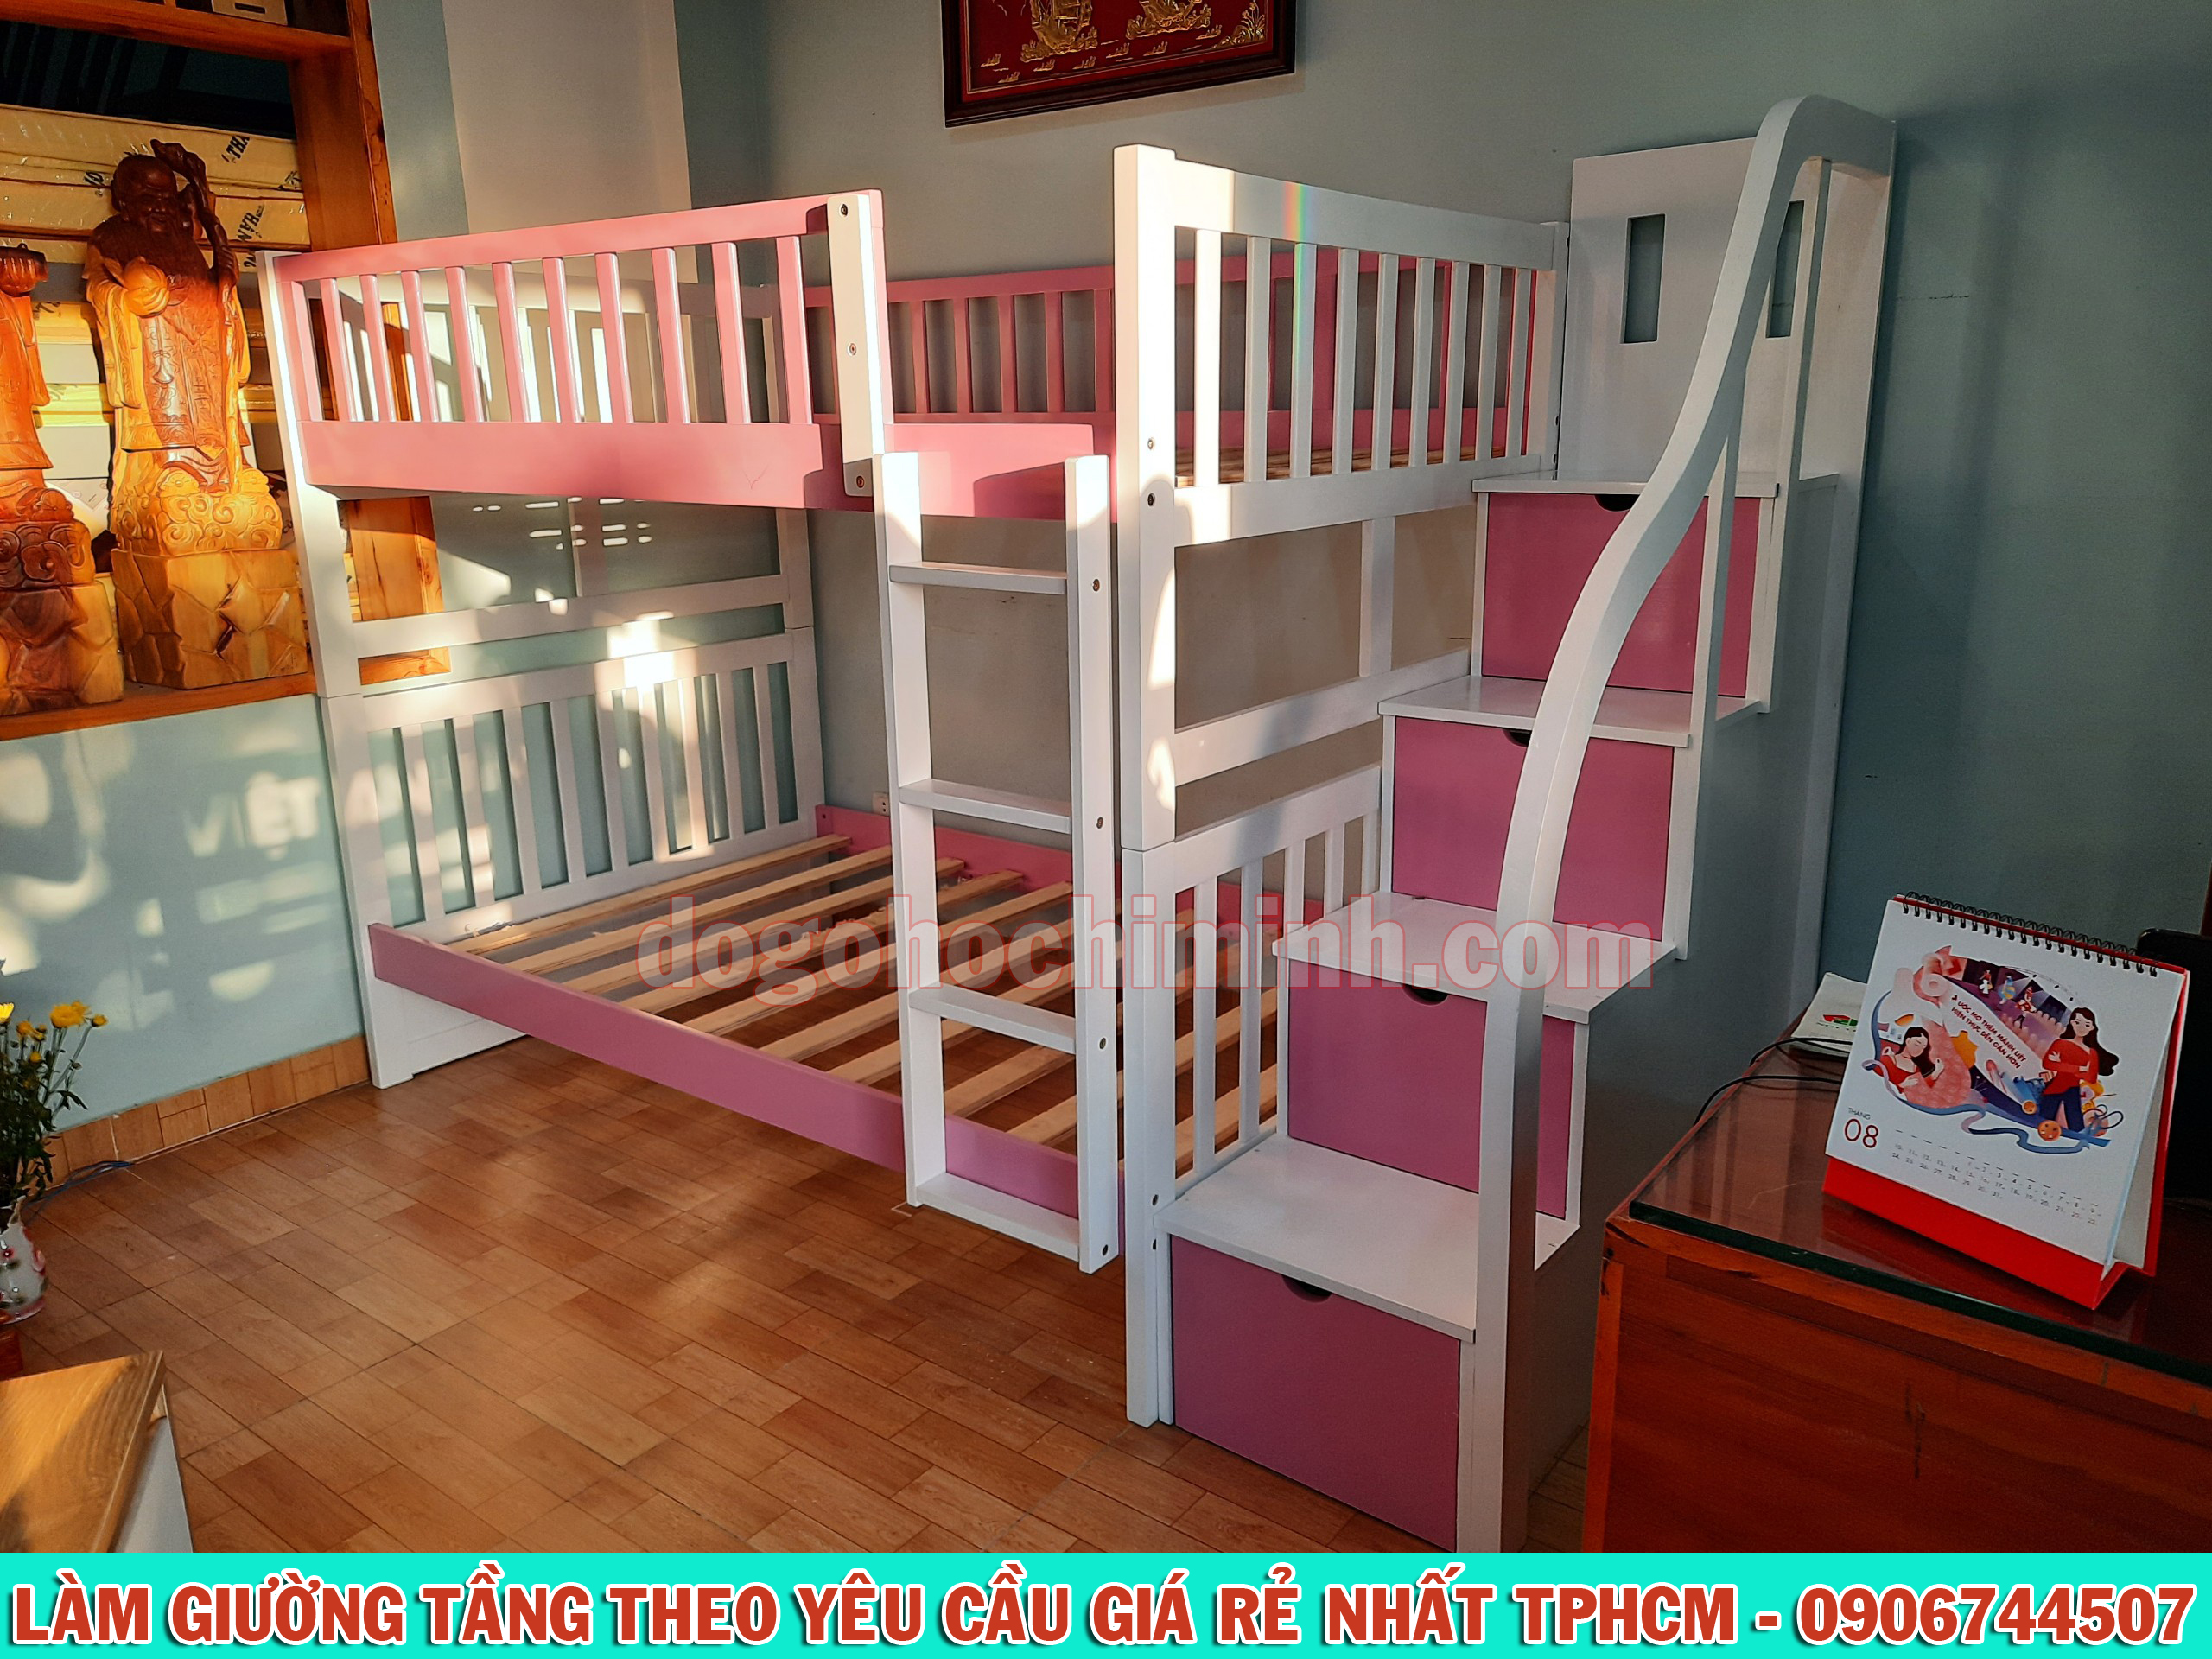 Mẫu giường 2 tầng độc quyền phối 2 màu trắng hồng giá rẻ đẹp tại TPHCM